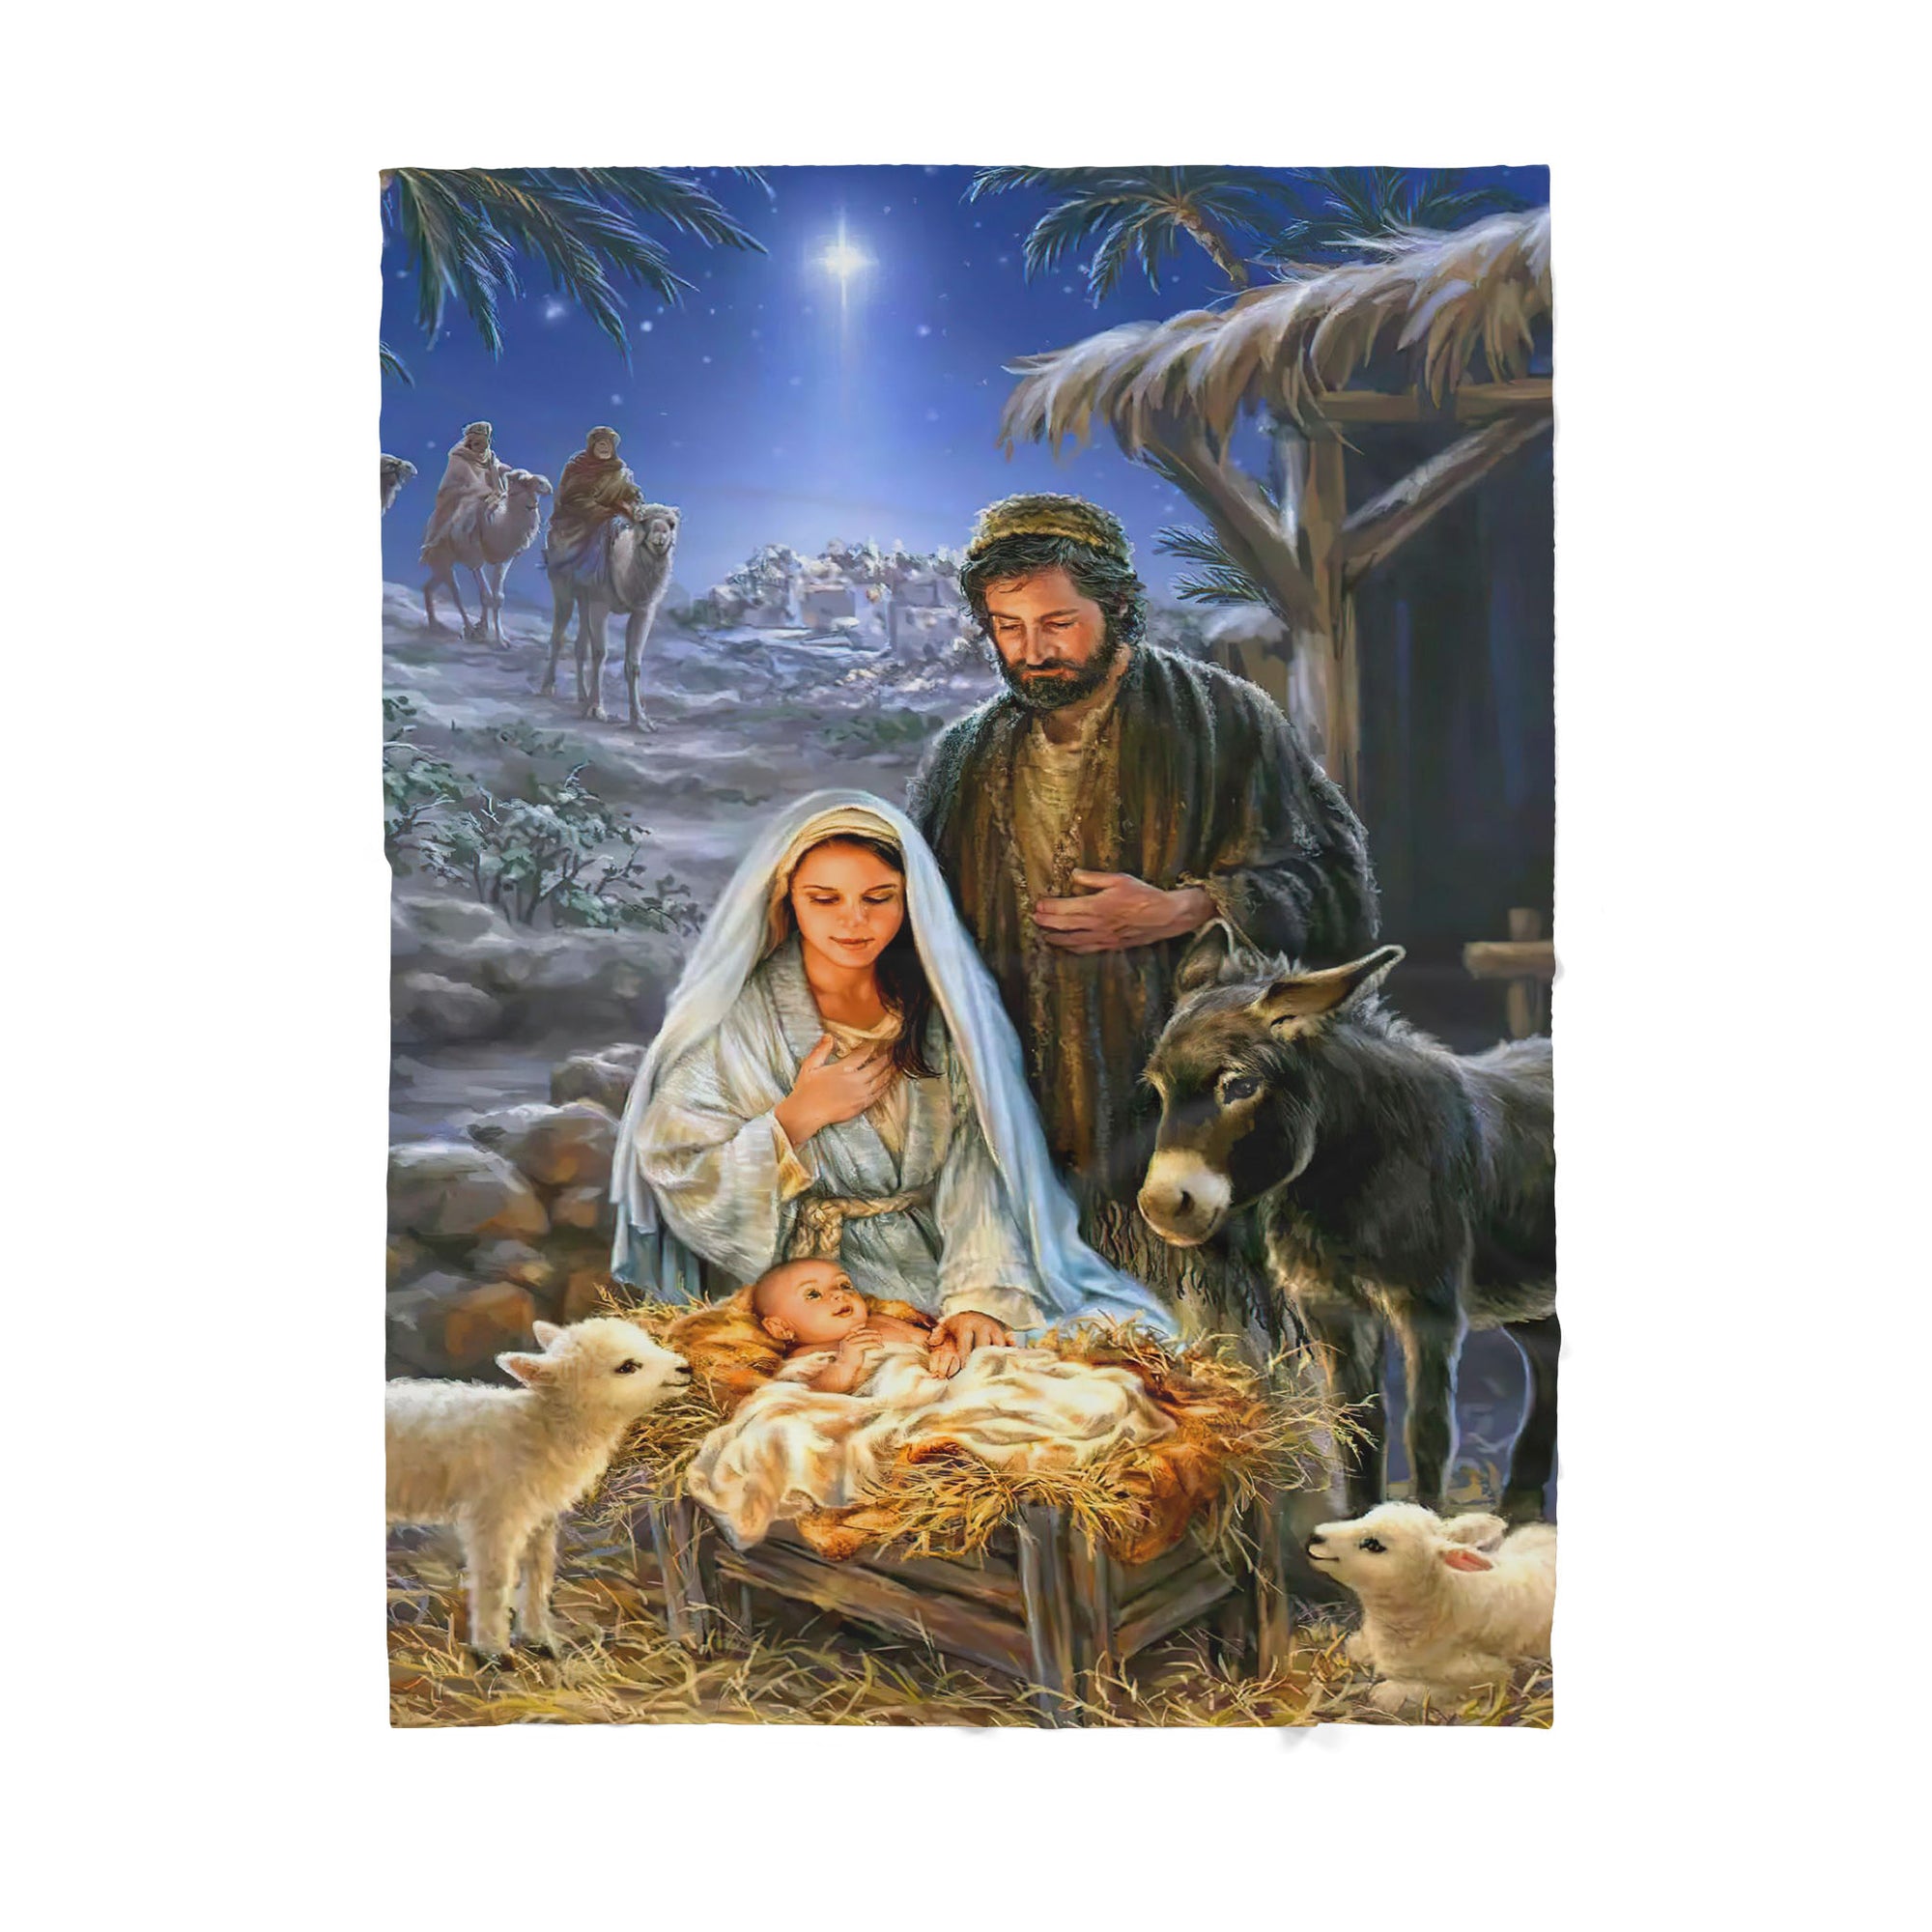 Premium Christian Jesus Gift from heaven Blanket - Best gift for Christian - sherpa blanket TT